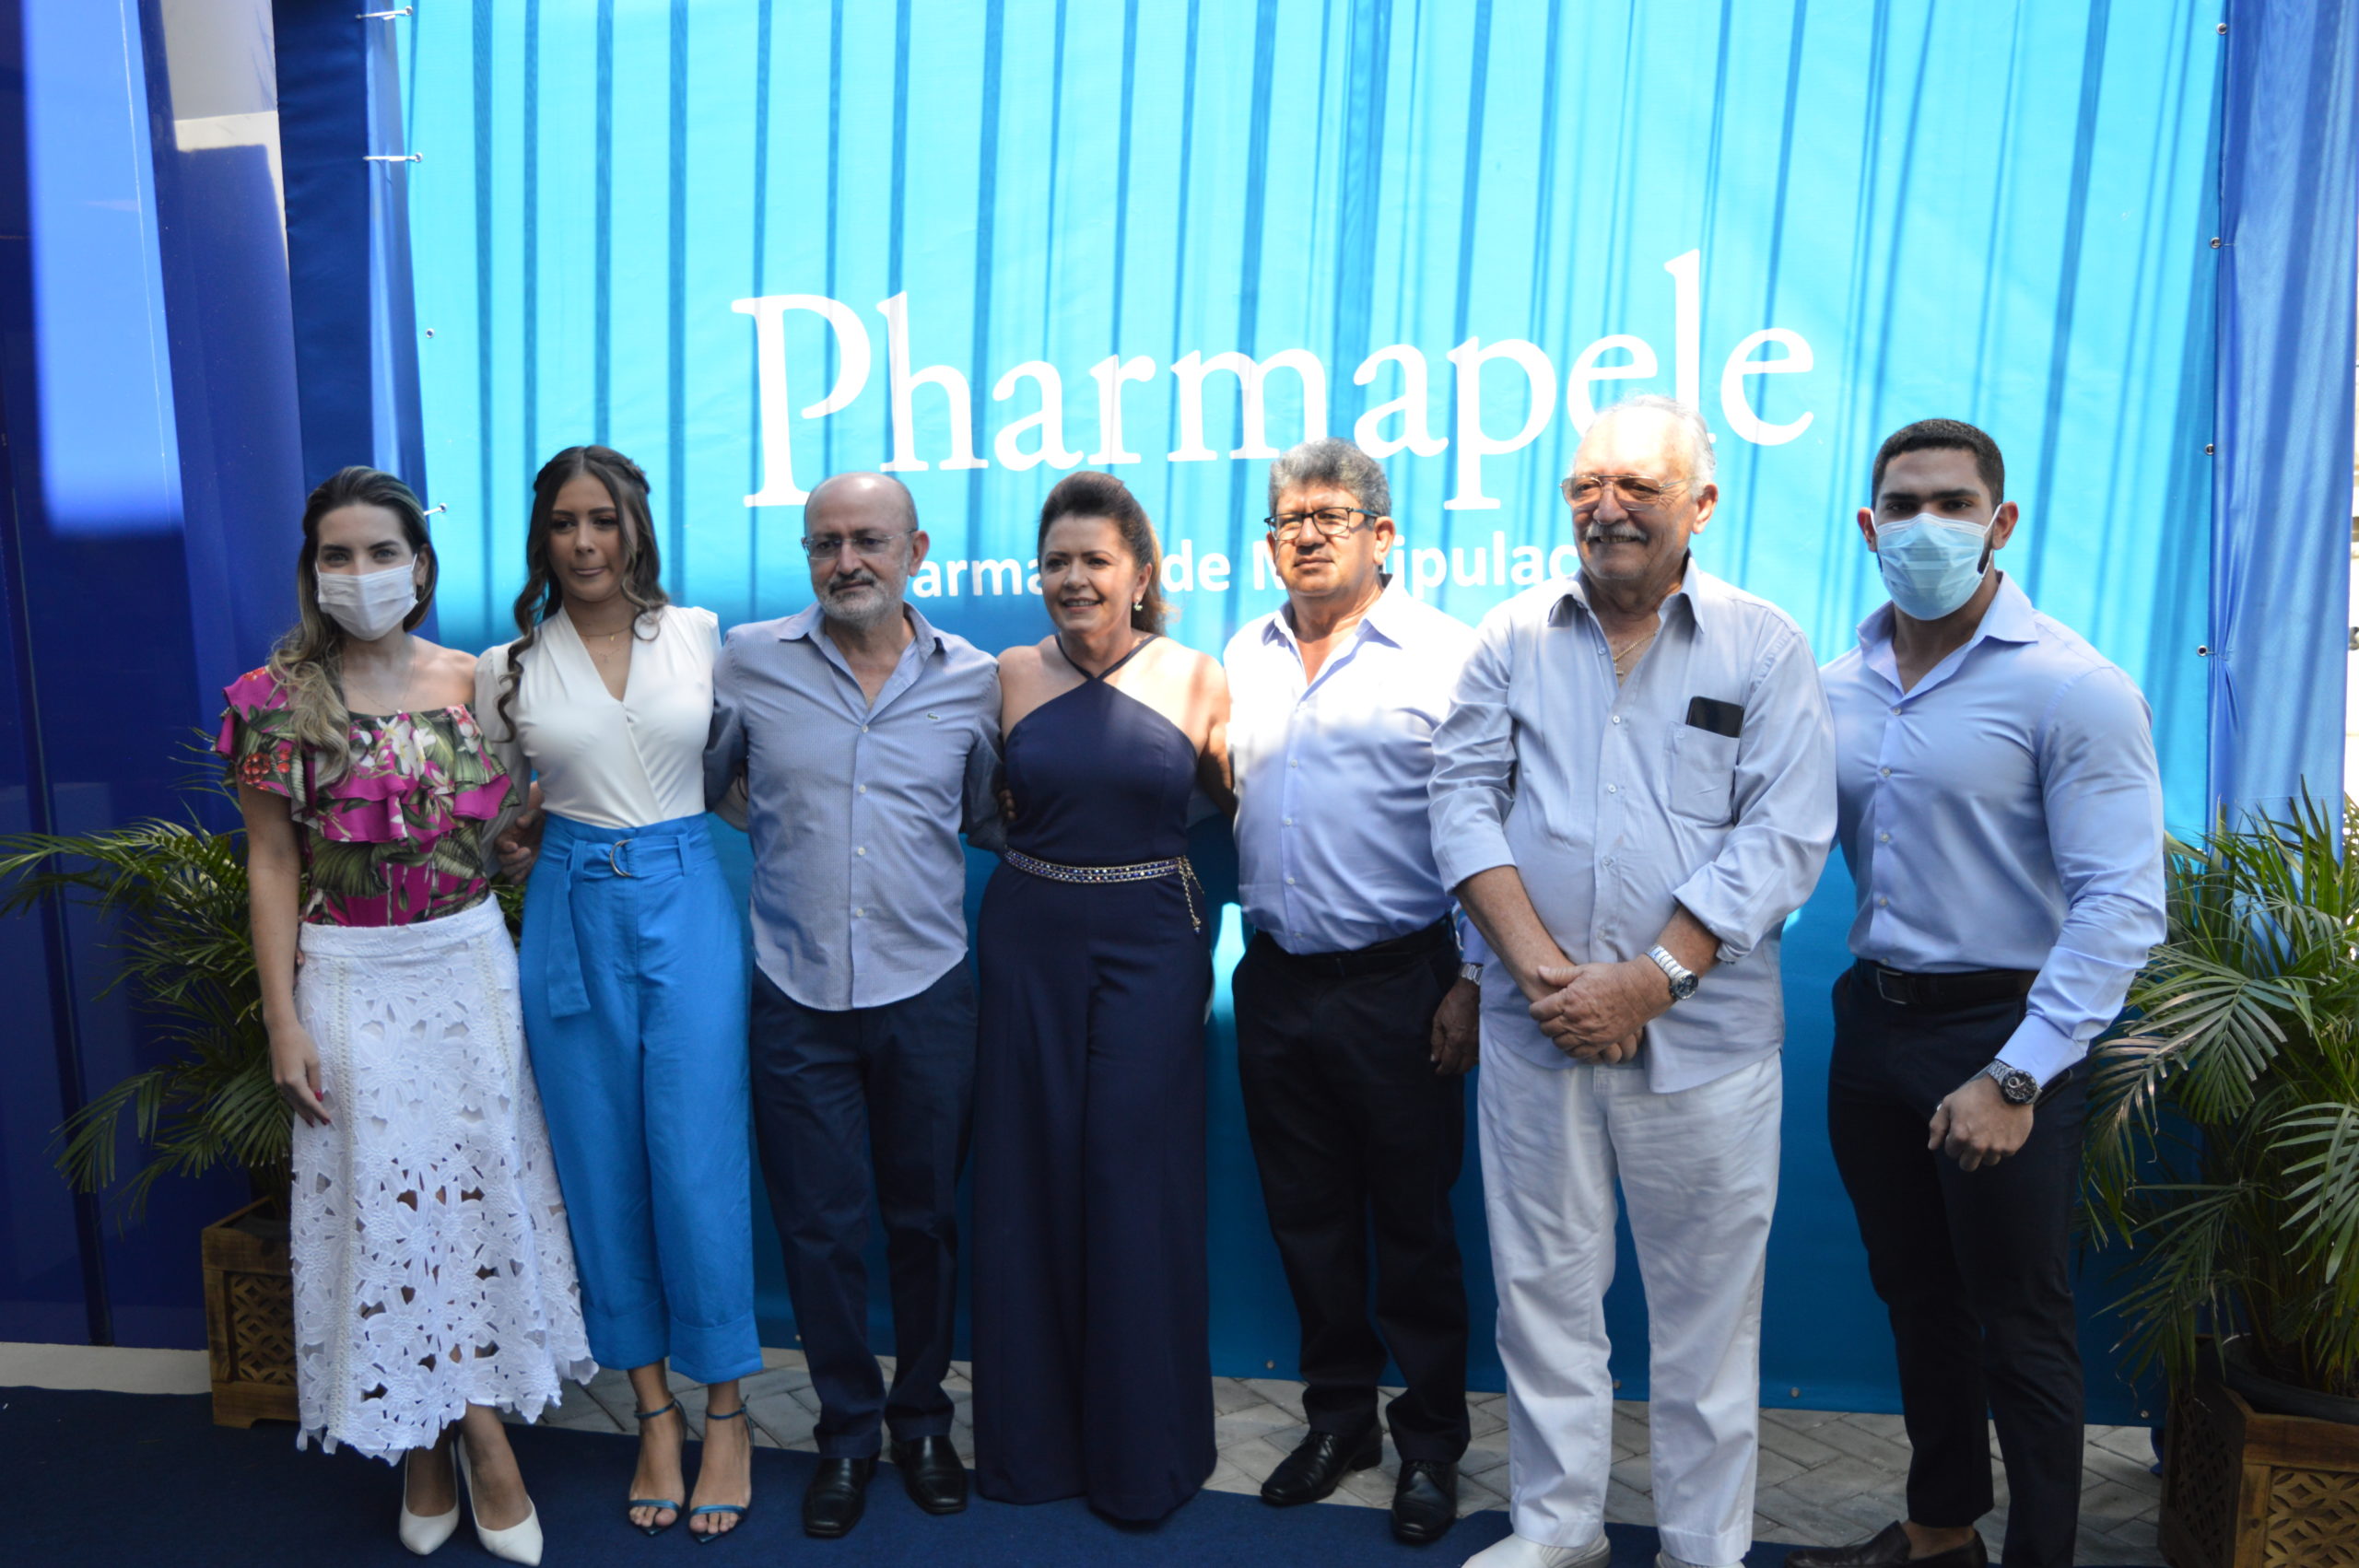 Mercado farmacêutico de ST se fortalece com a Pharmapele